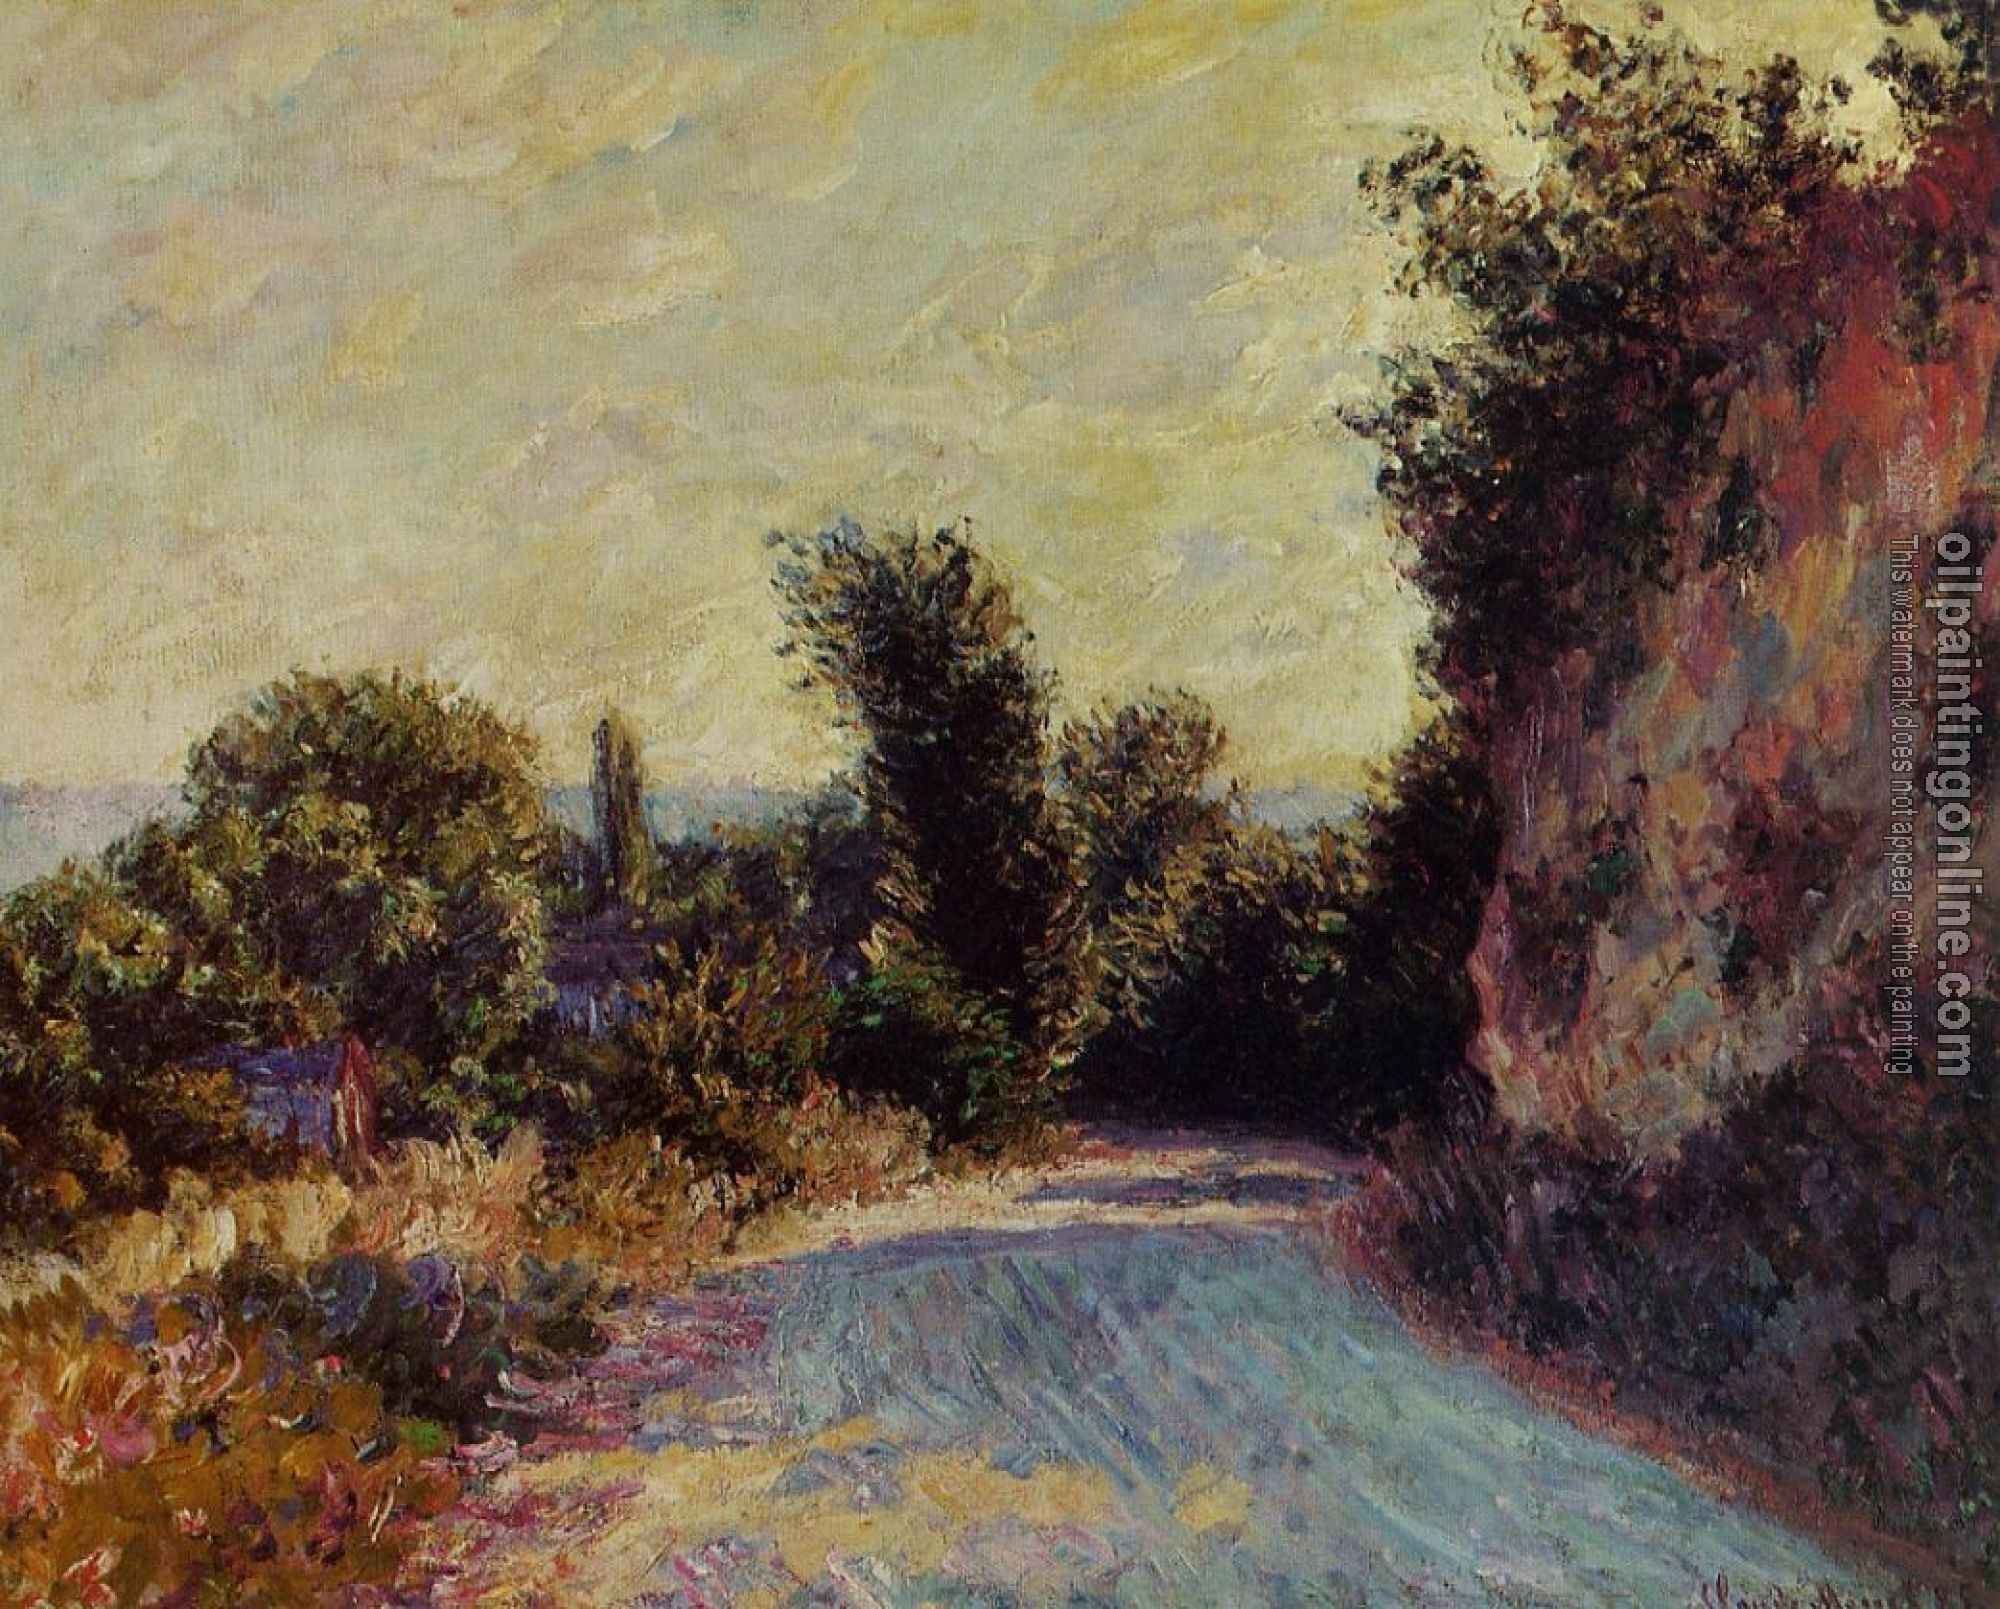 Monet, Claude Oscar - Road near Giverny